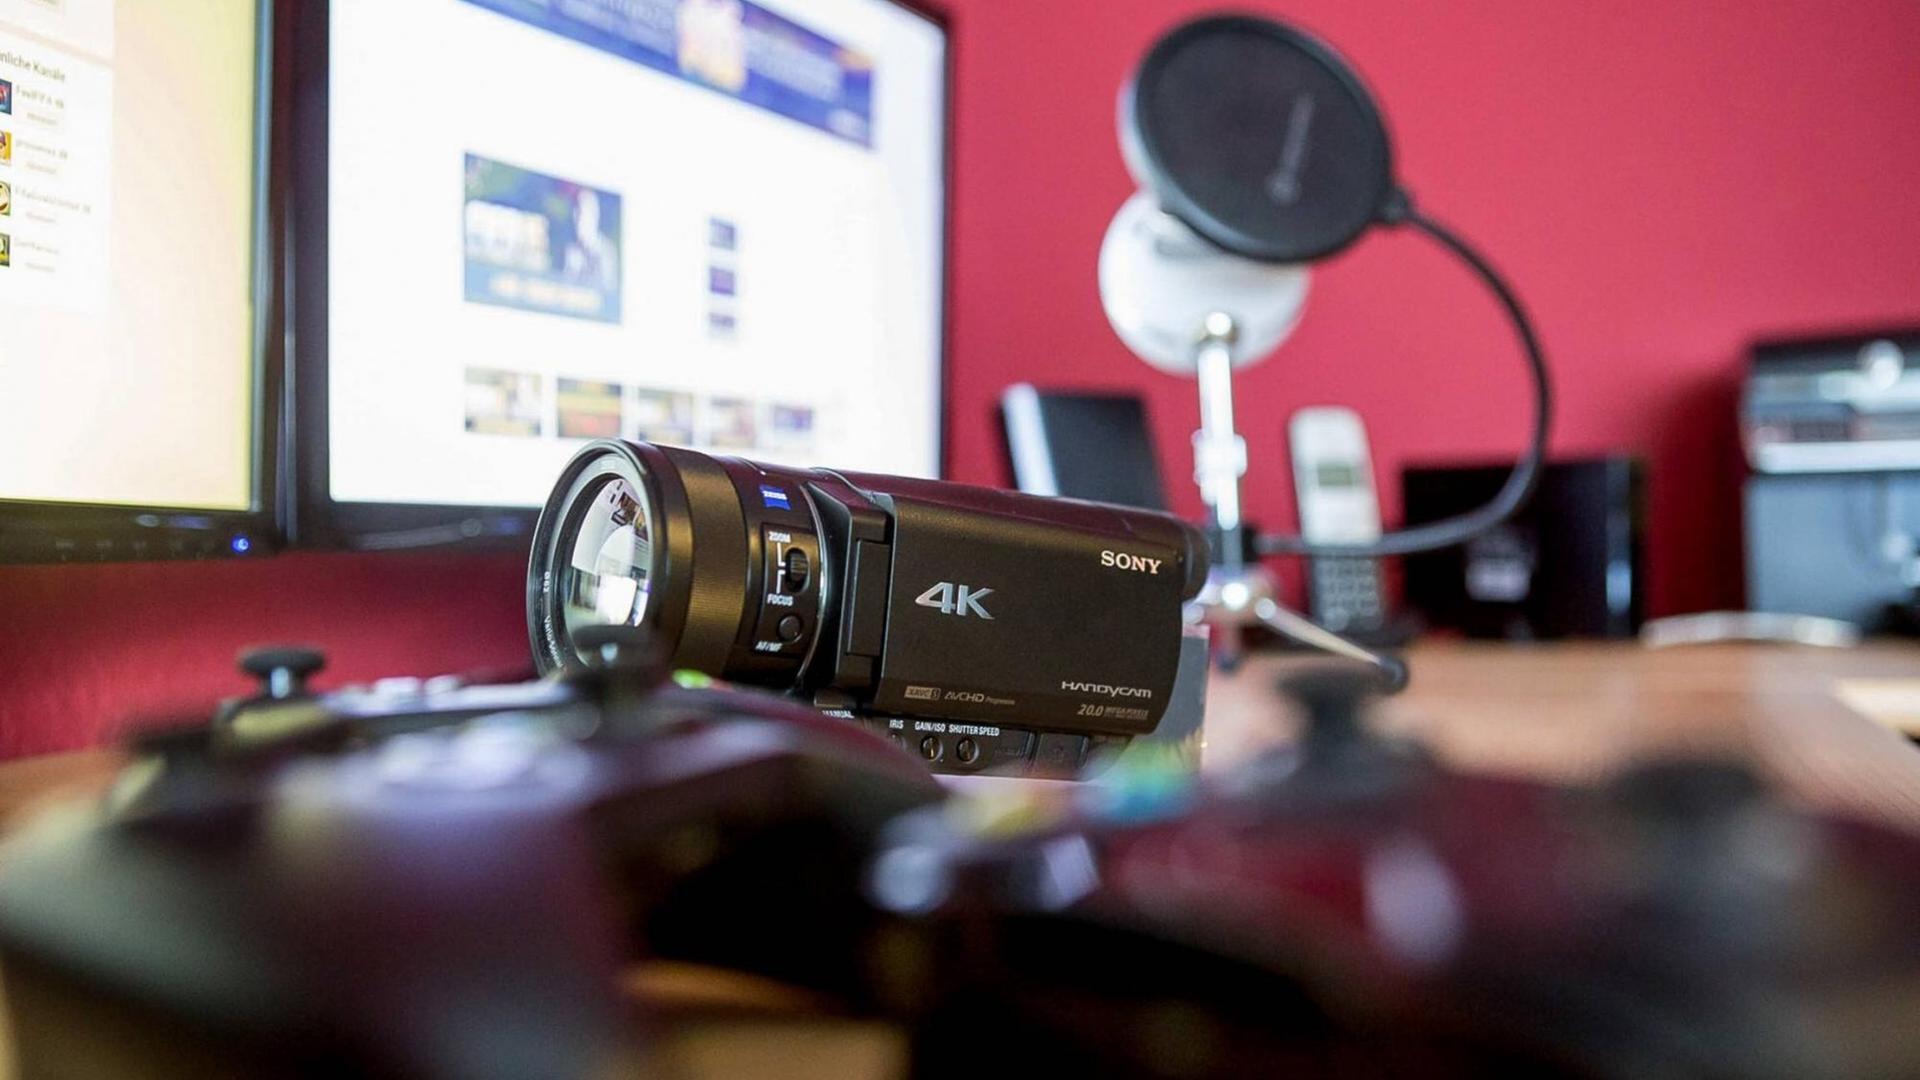 Kamera, Kopfhörer, Bildschirm: Die Ausrüstung eines Youtube-Kanals von Konsolen-Spielern.